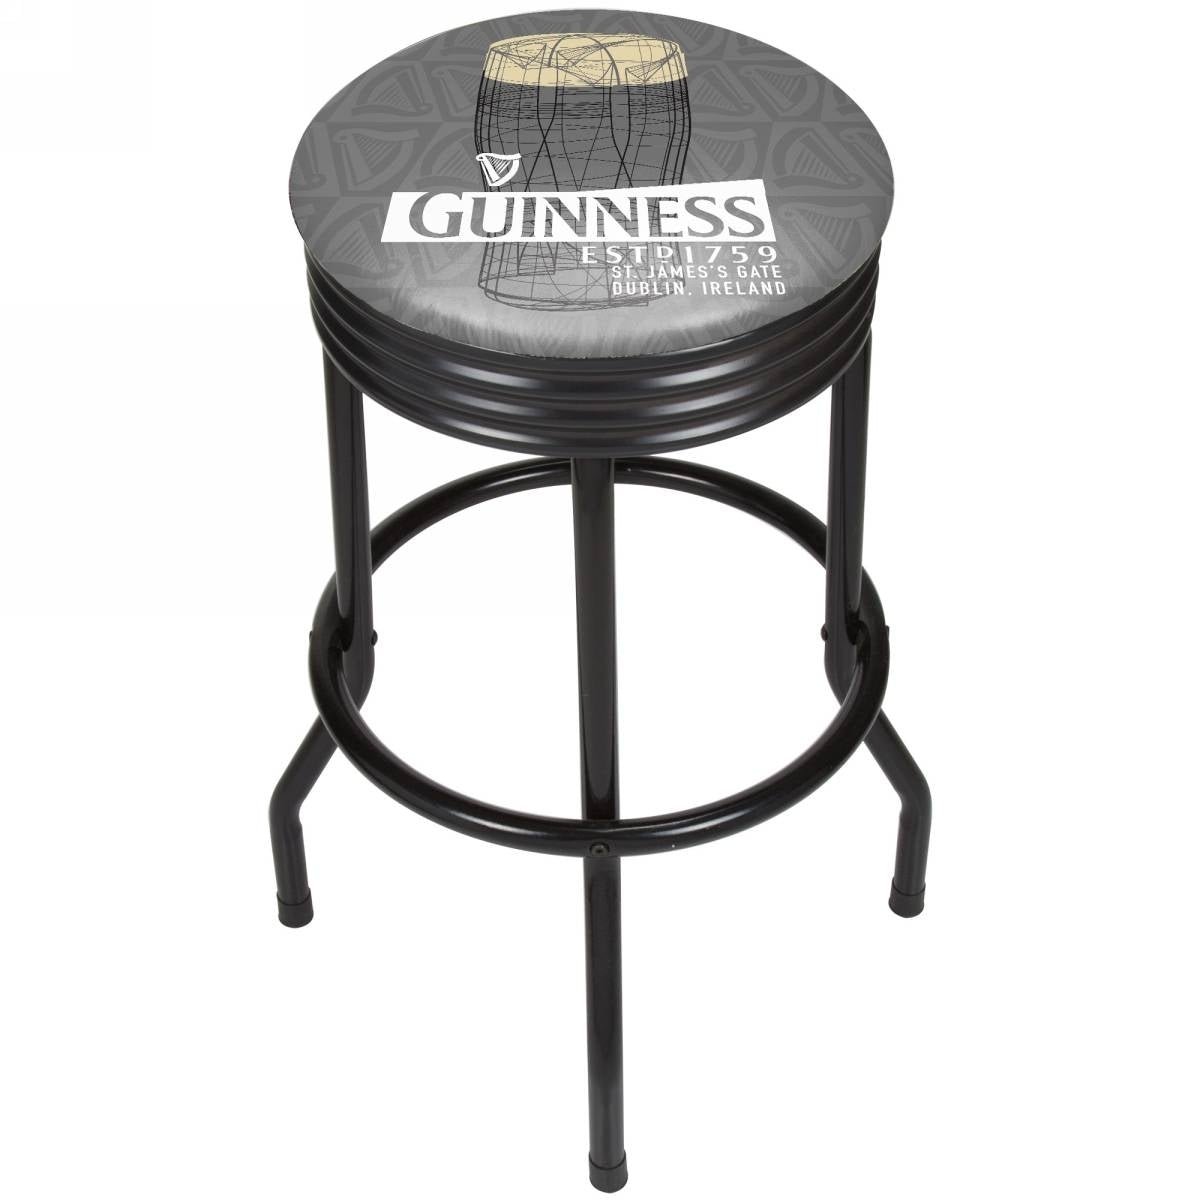 Guinness Black Ribbed Bar Stool - Line Art Pint